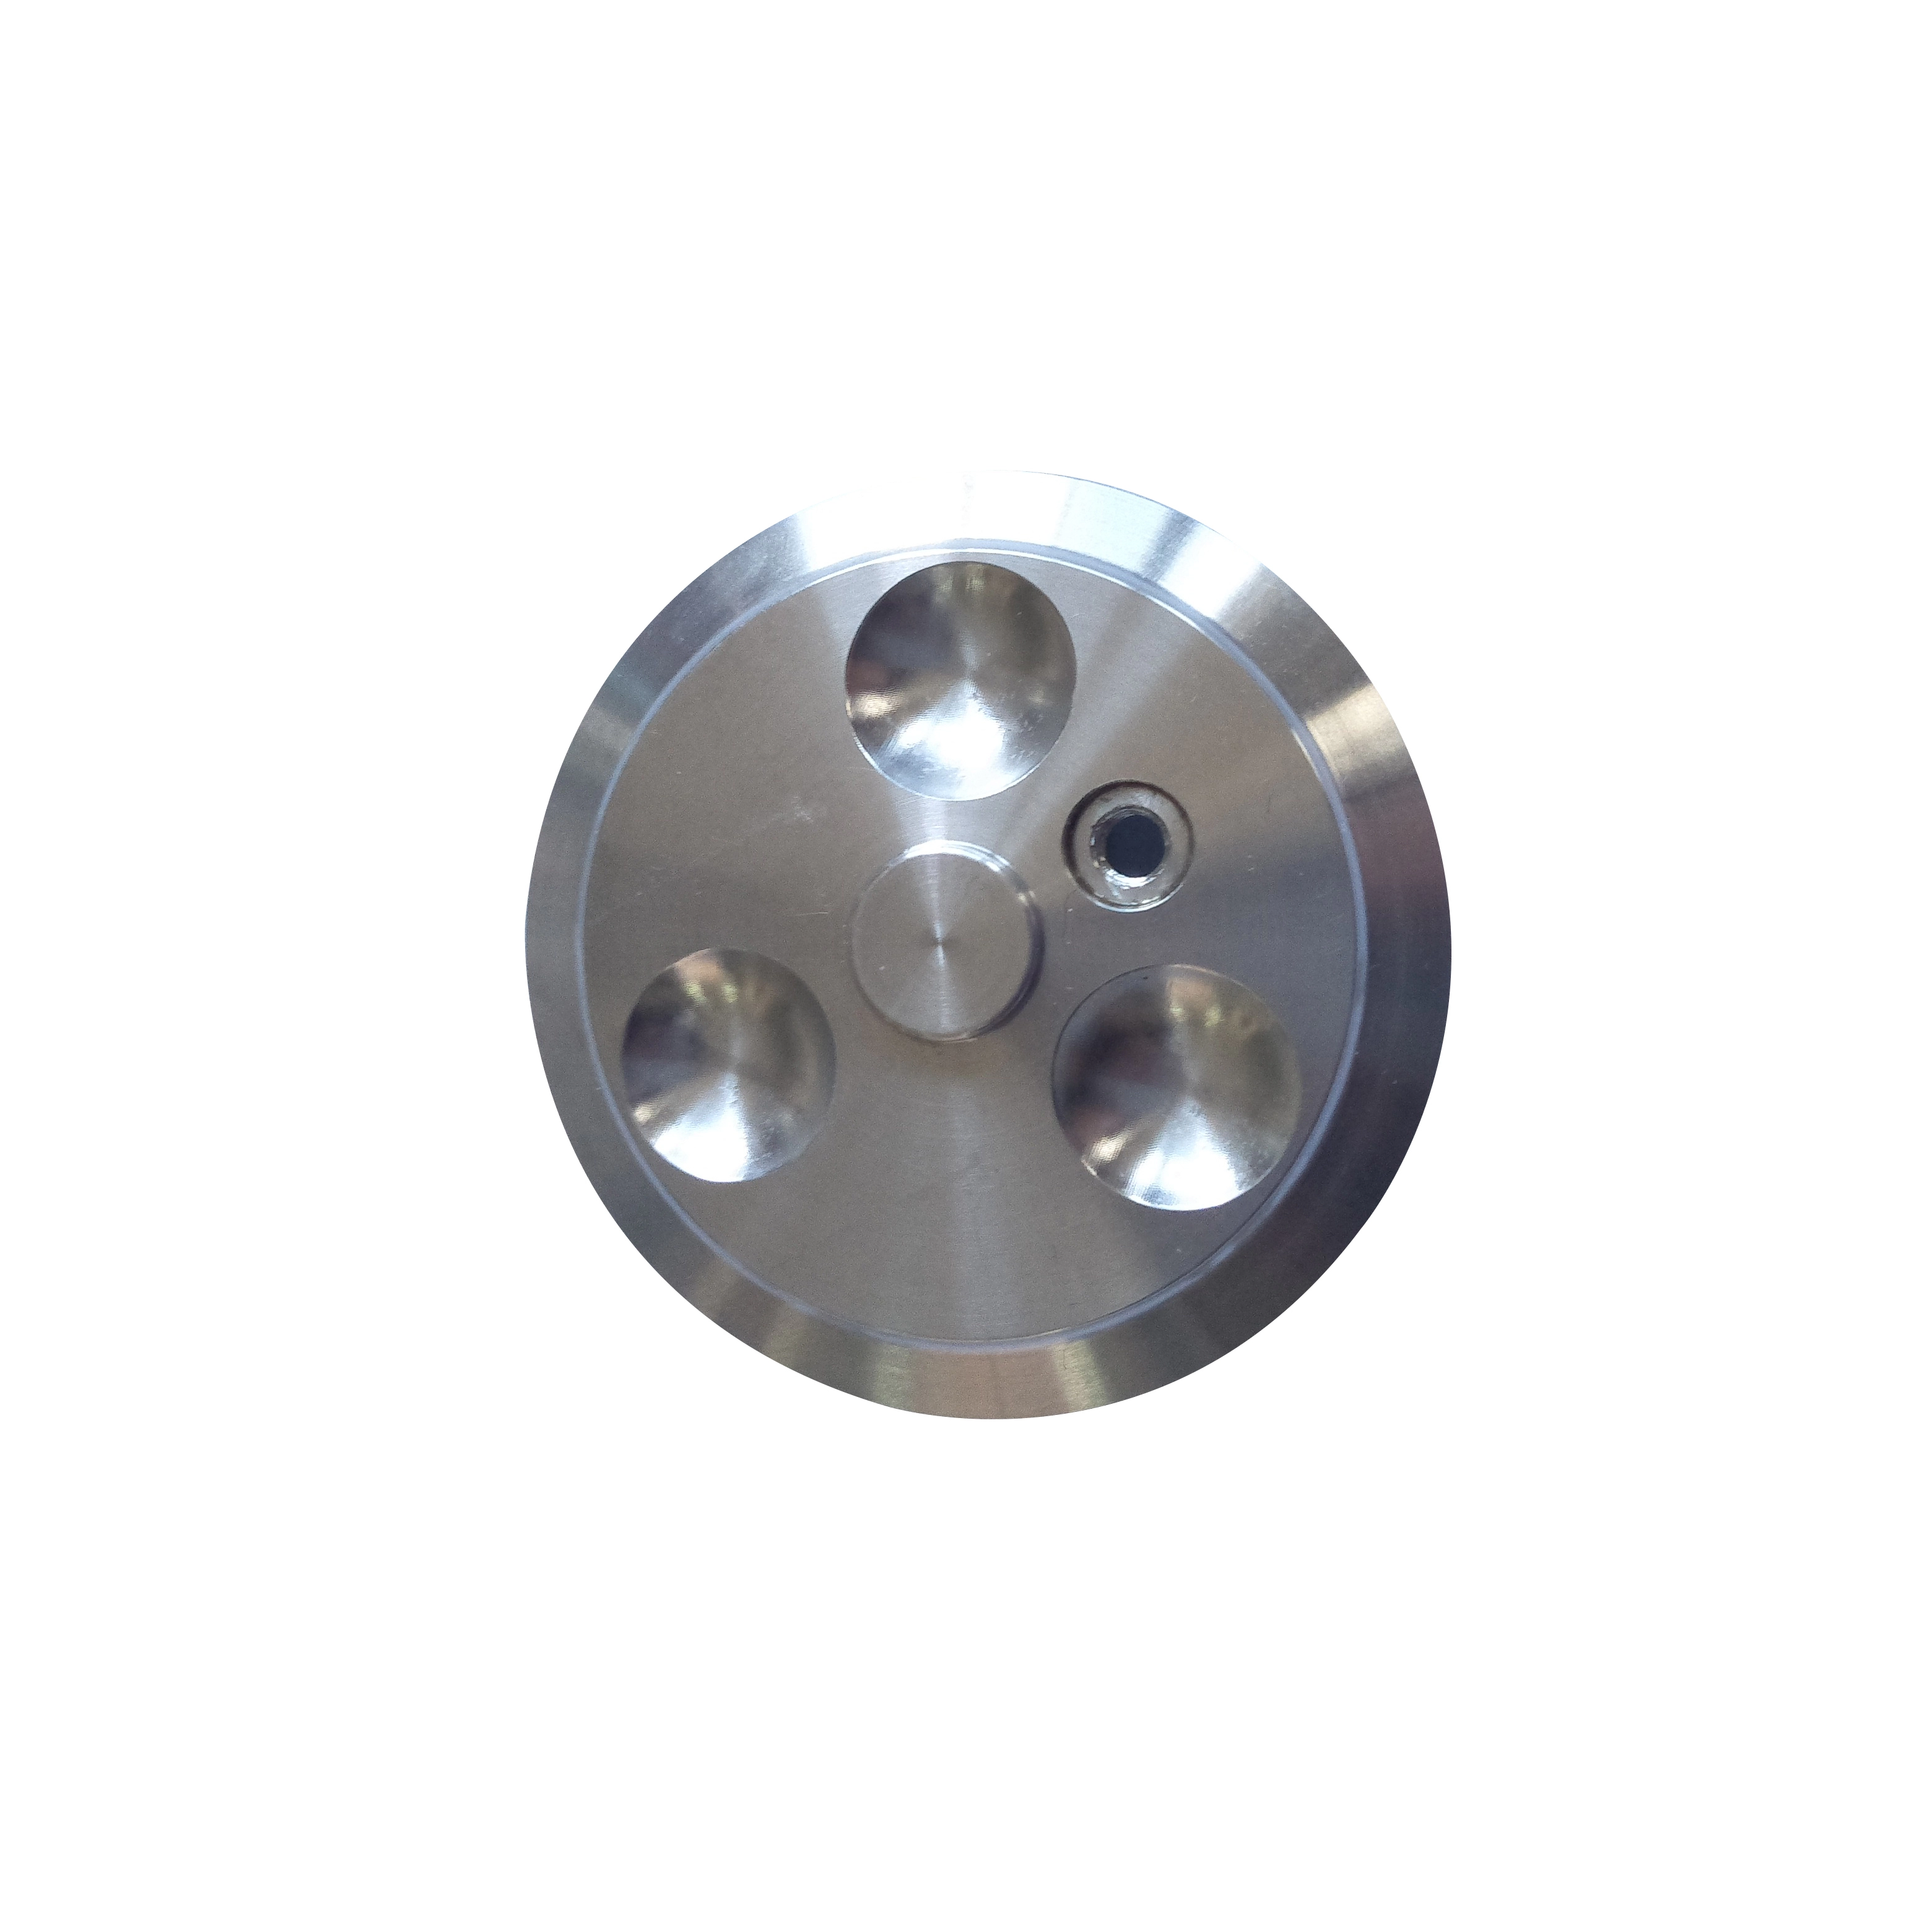 Piezas de acero de gran dimensión procesadas por CNC 6 Axis Máquina automática de torneado y fresado de alta precisión